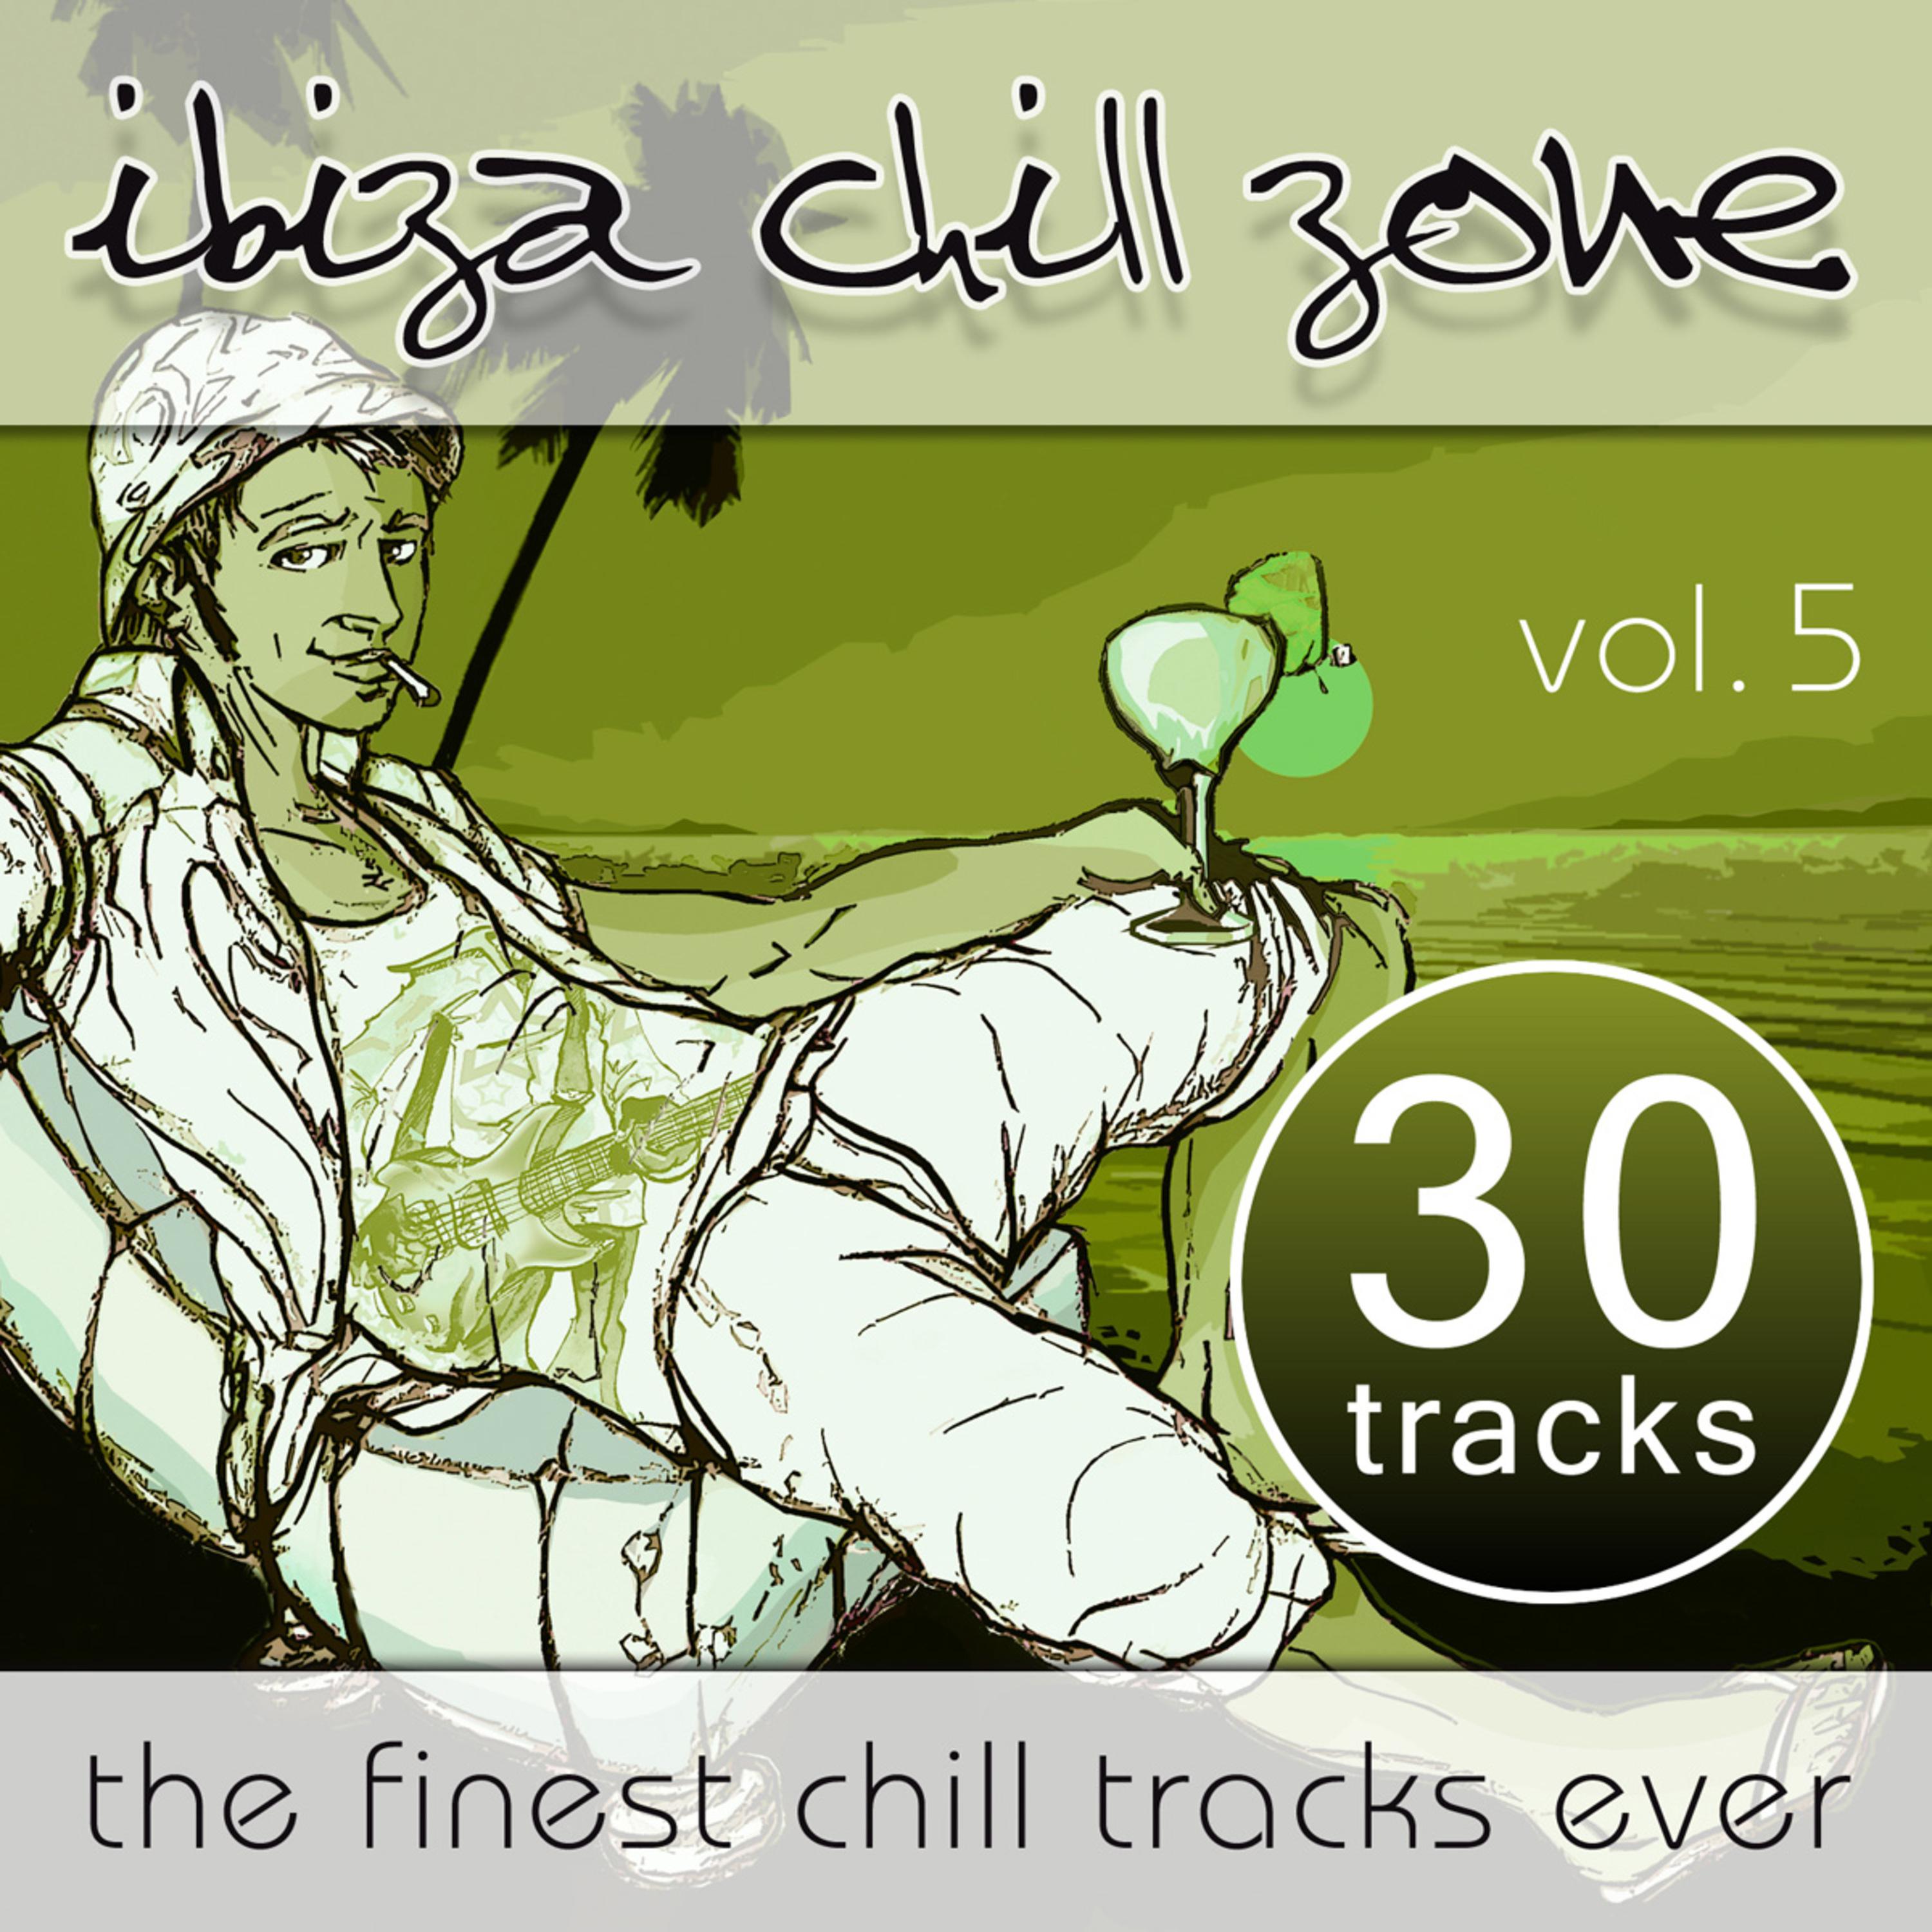 Ibiza Chill Zone - 30 Tracks (Vol. 5)